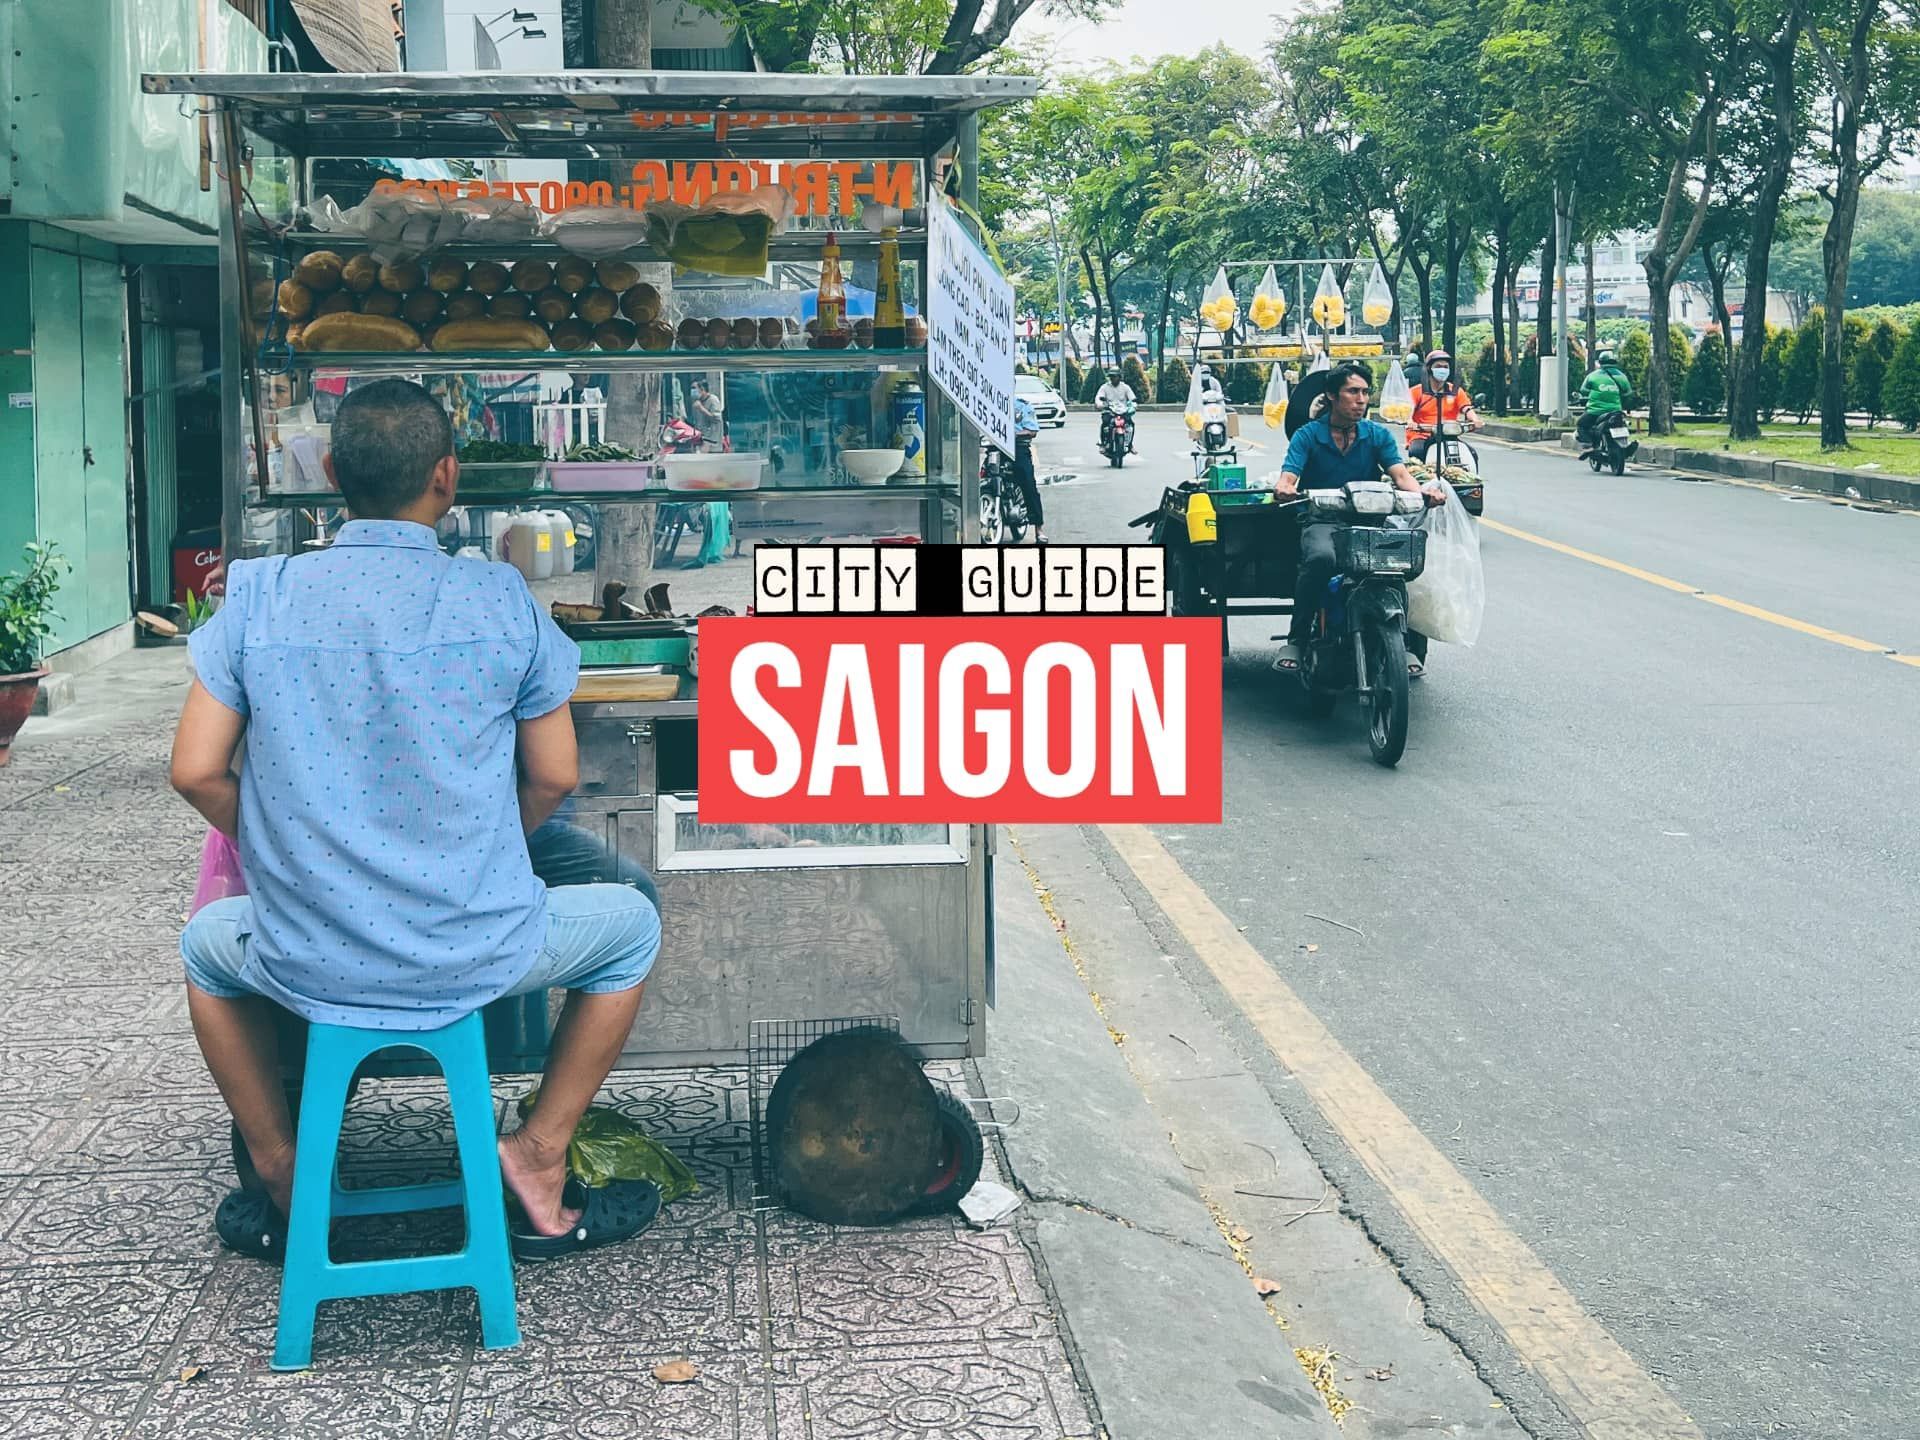 Saigon City Guide Banner